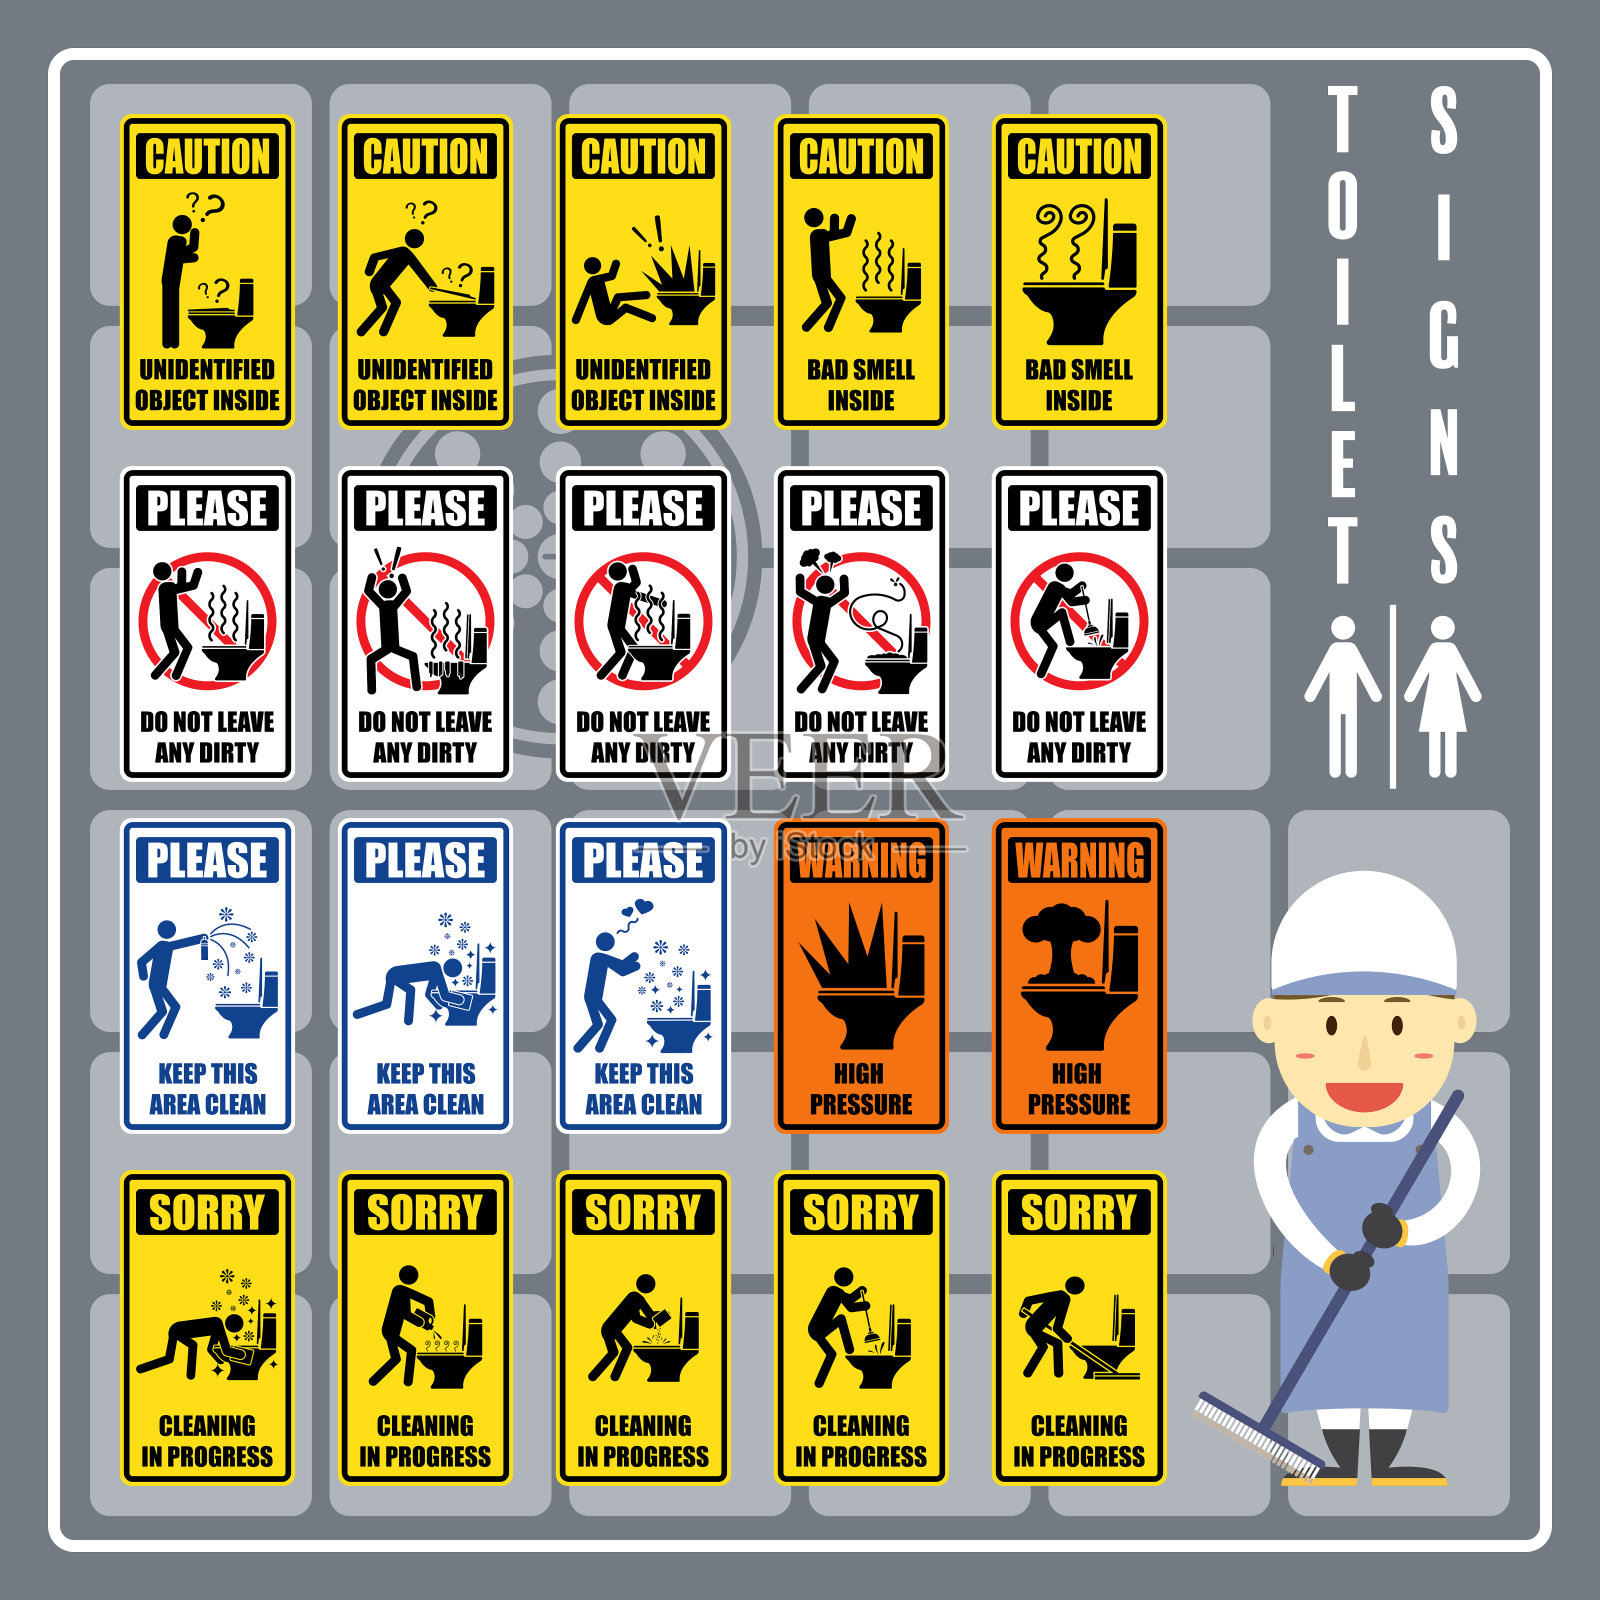 一套标志和符号的厕所警告，警告和指示，厕所标签的新设计。插画图片素材